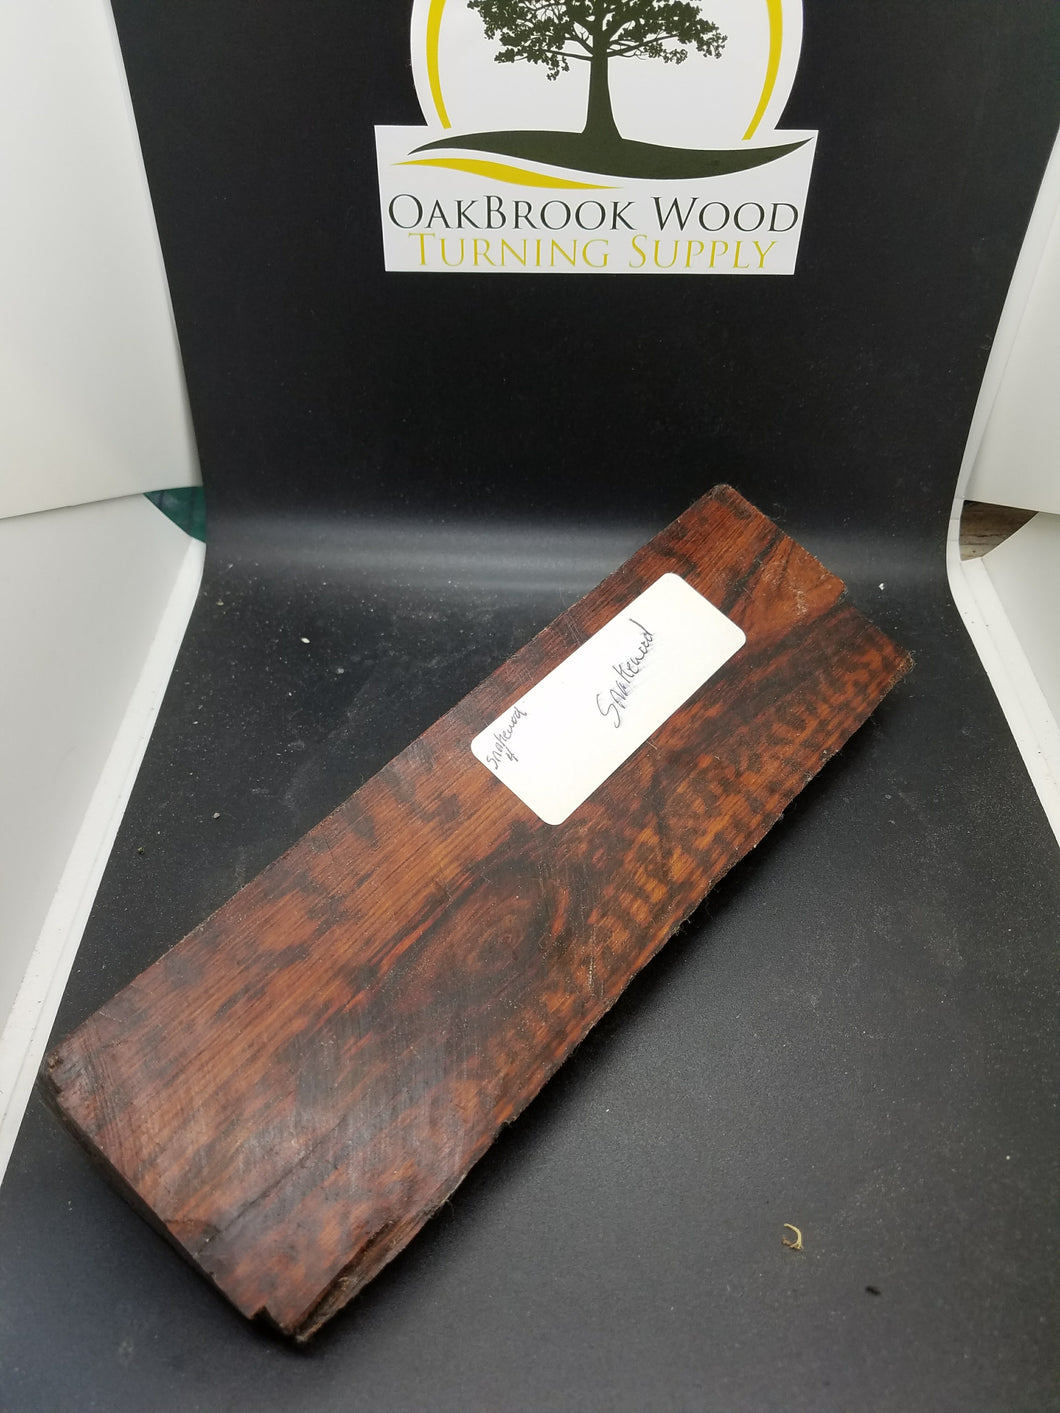 Snake wood Exotic Spindle Stock - Oakbrook Wood Turning Supply